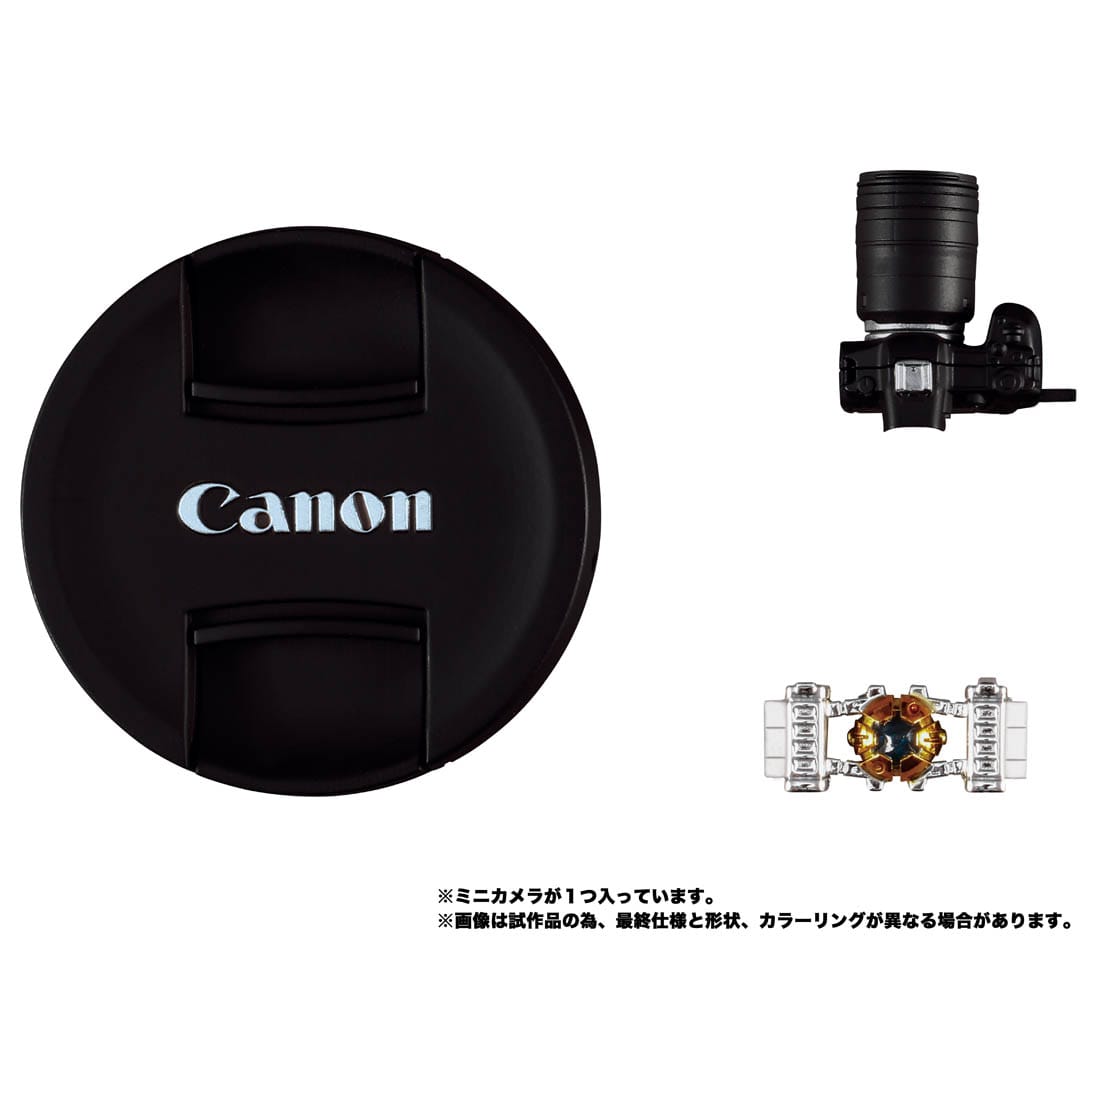 Canon/TRANSFORMERS オプティマスプライムR5 | 鉄道模型・プラモデル 